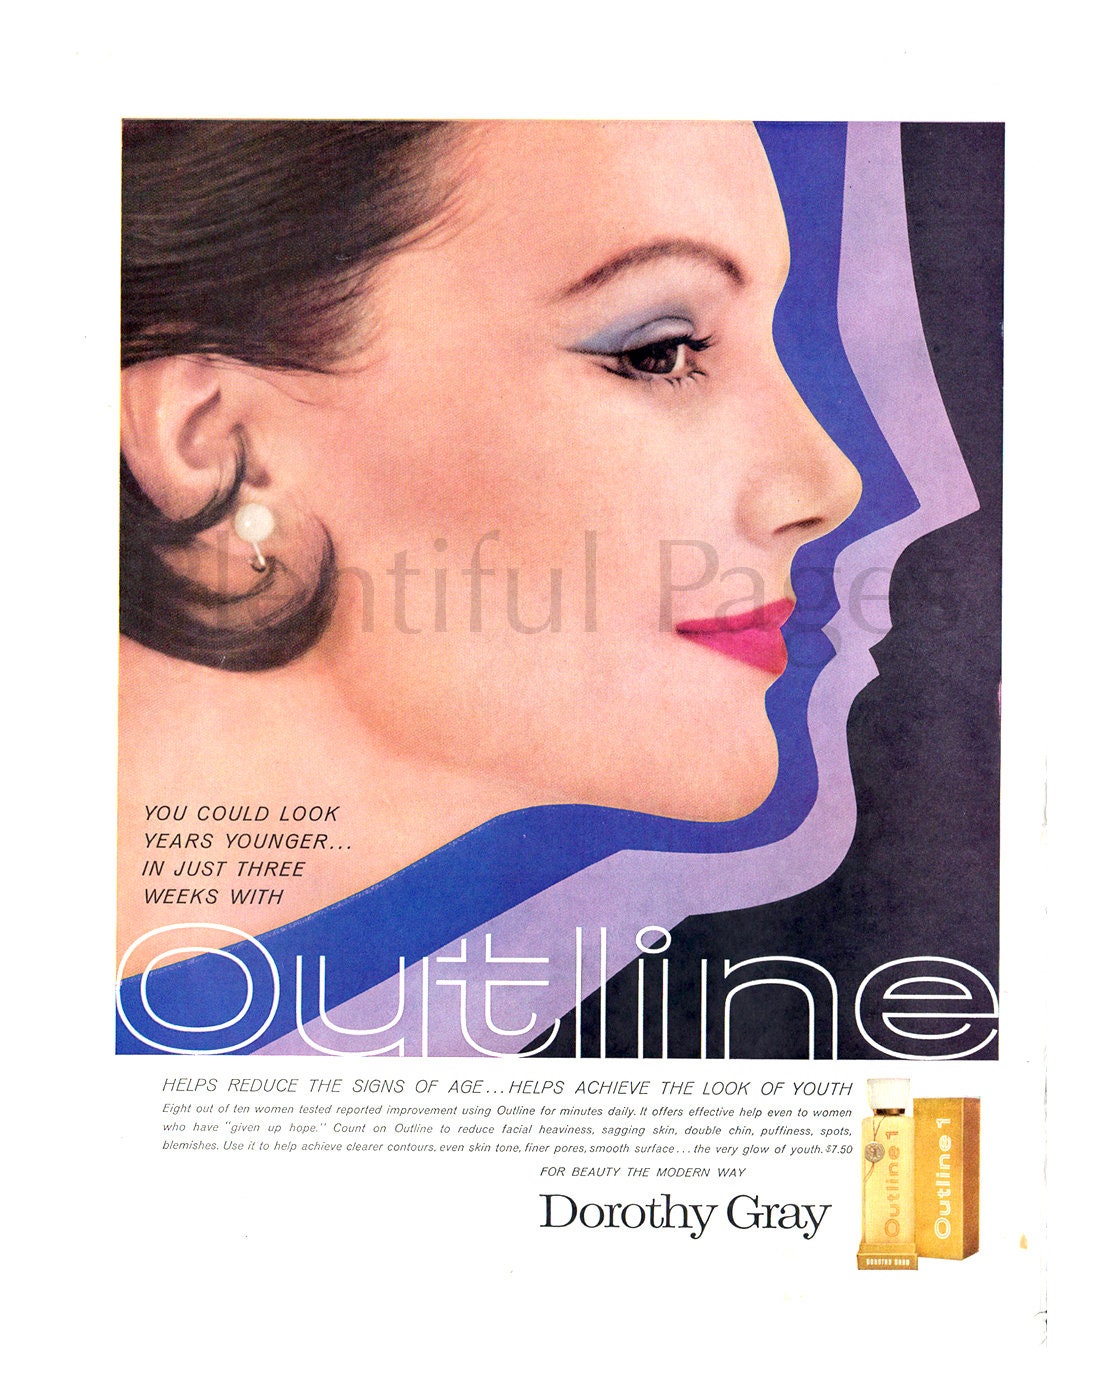 1960/'s Beauty Retro Beauty Cream Advertising Art 1960/'s Fashion 1960 Dorothy Gray Vintage Ad Retro Beauty Satura Great for Framing.